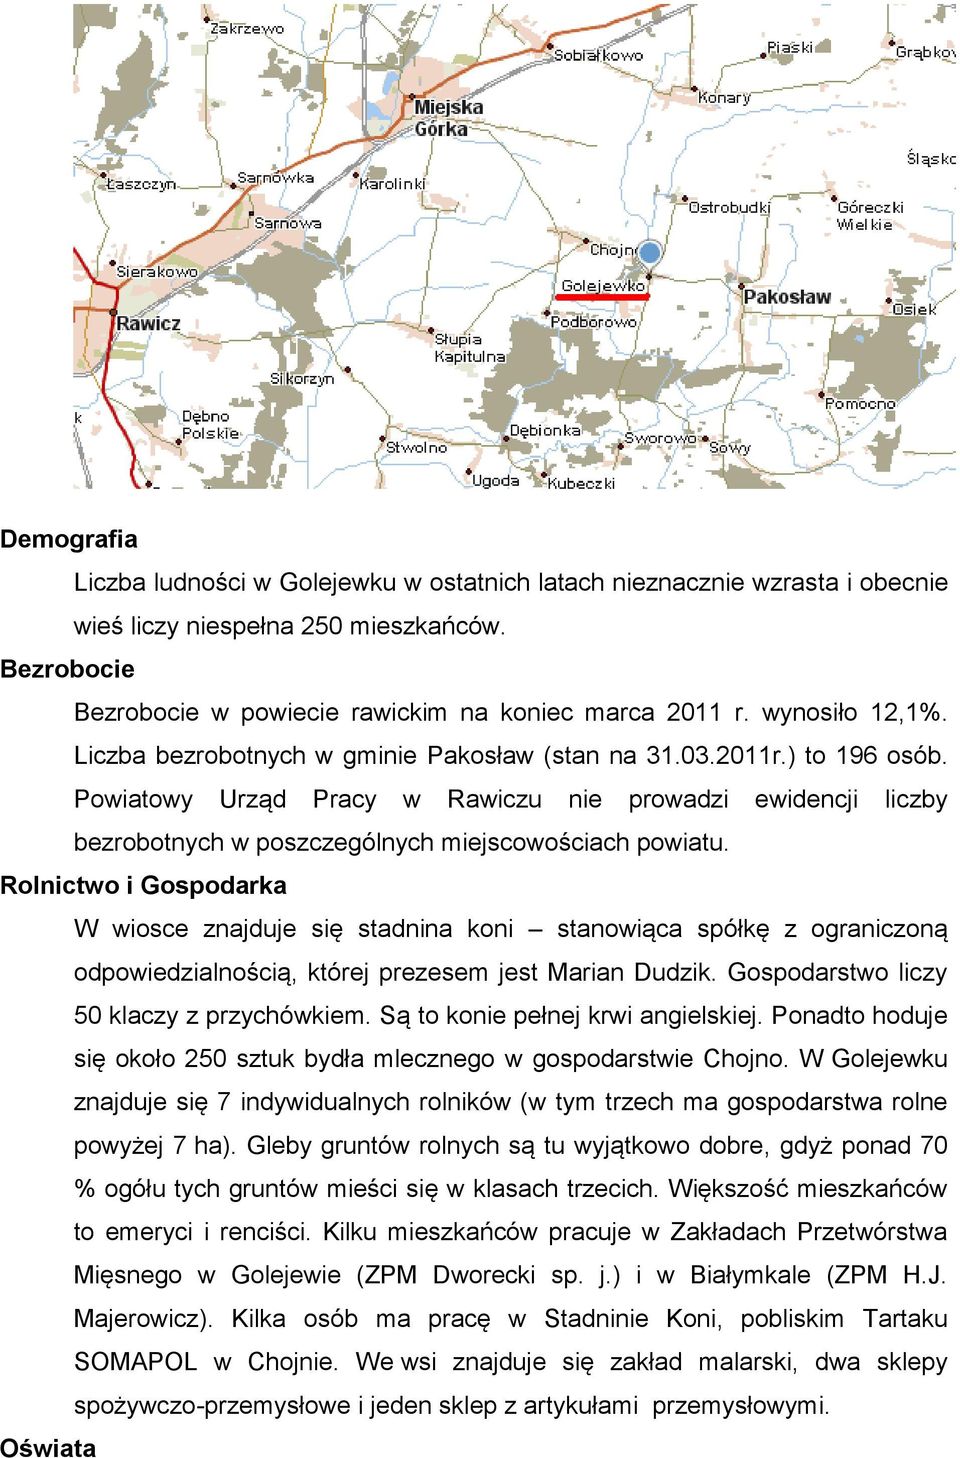 Powiatowy Urząd Pracy w Rawiczu nie prowadzi ewidencji liczby bezrobotnych w poszczególnych miejscowościach powiatu.